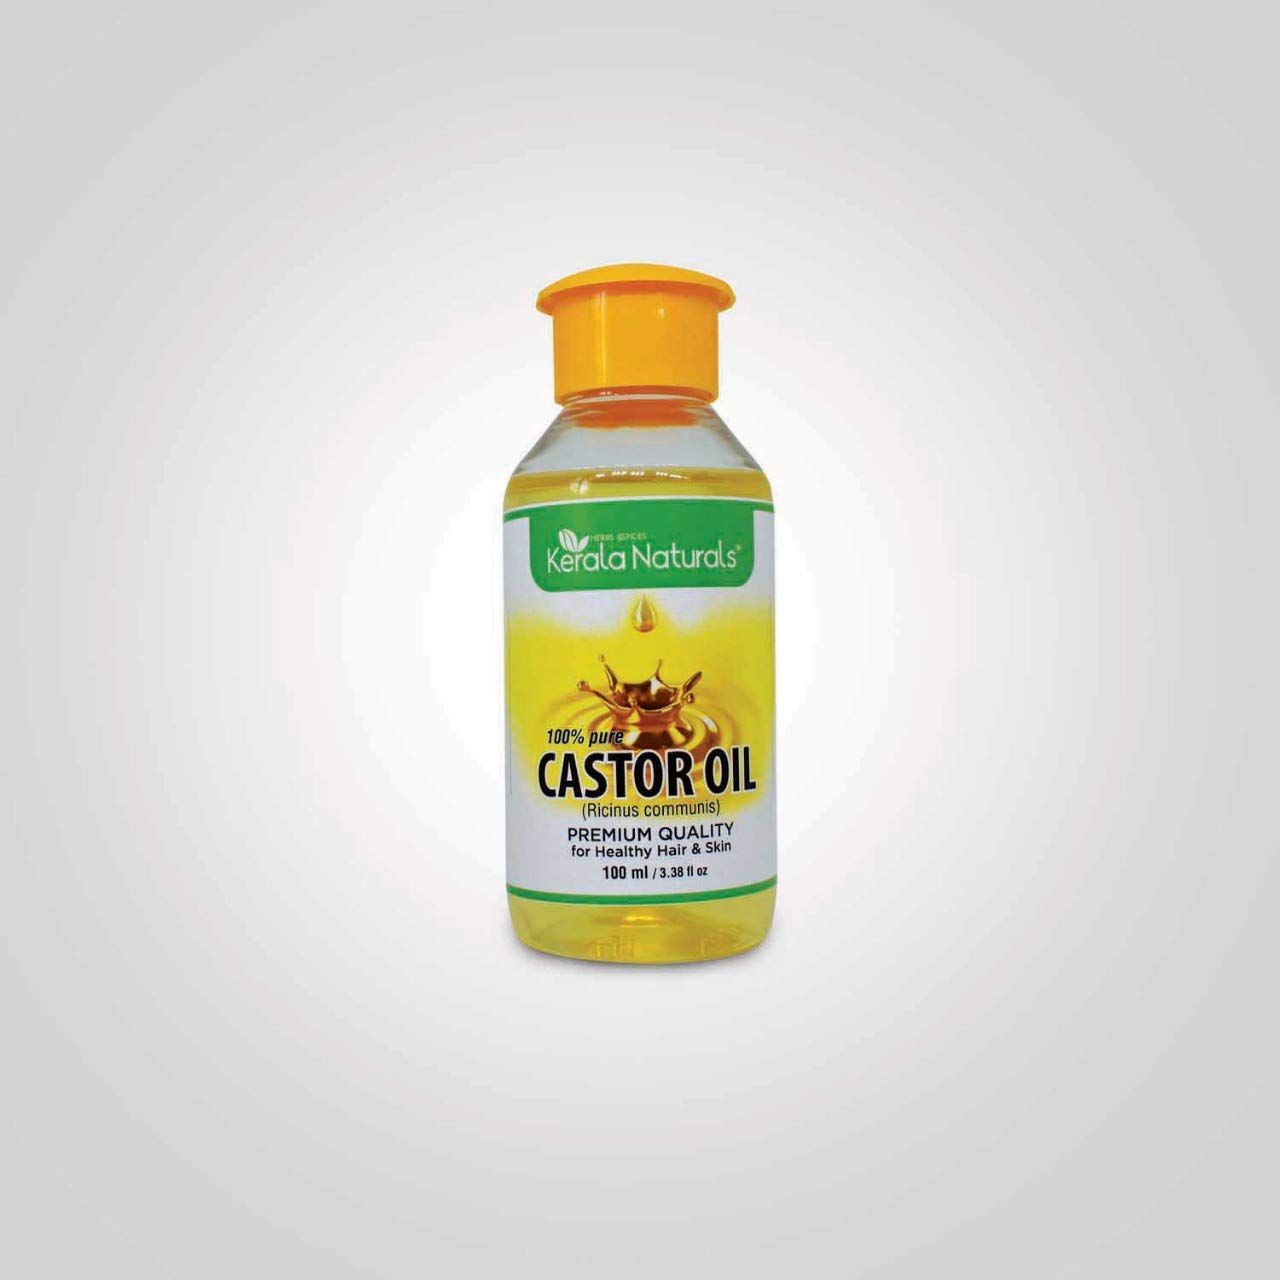 Kerala Naturals Castor Oil 100ml